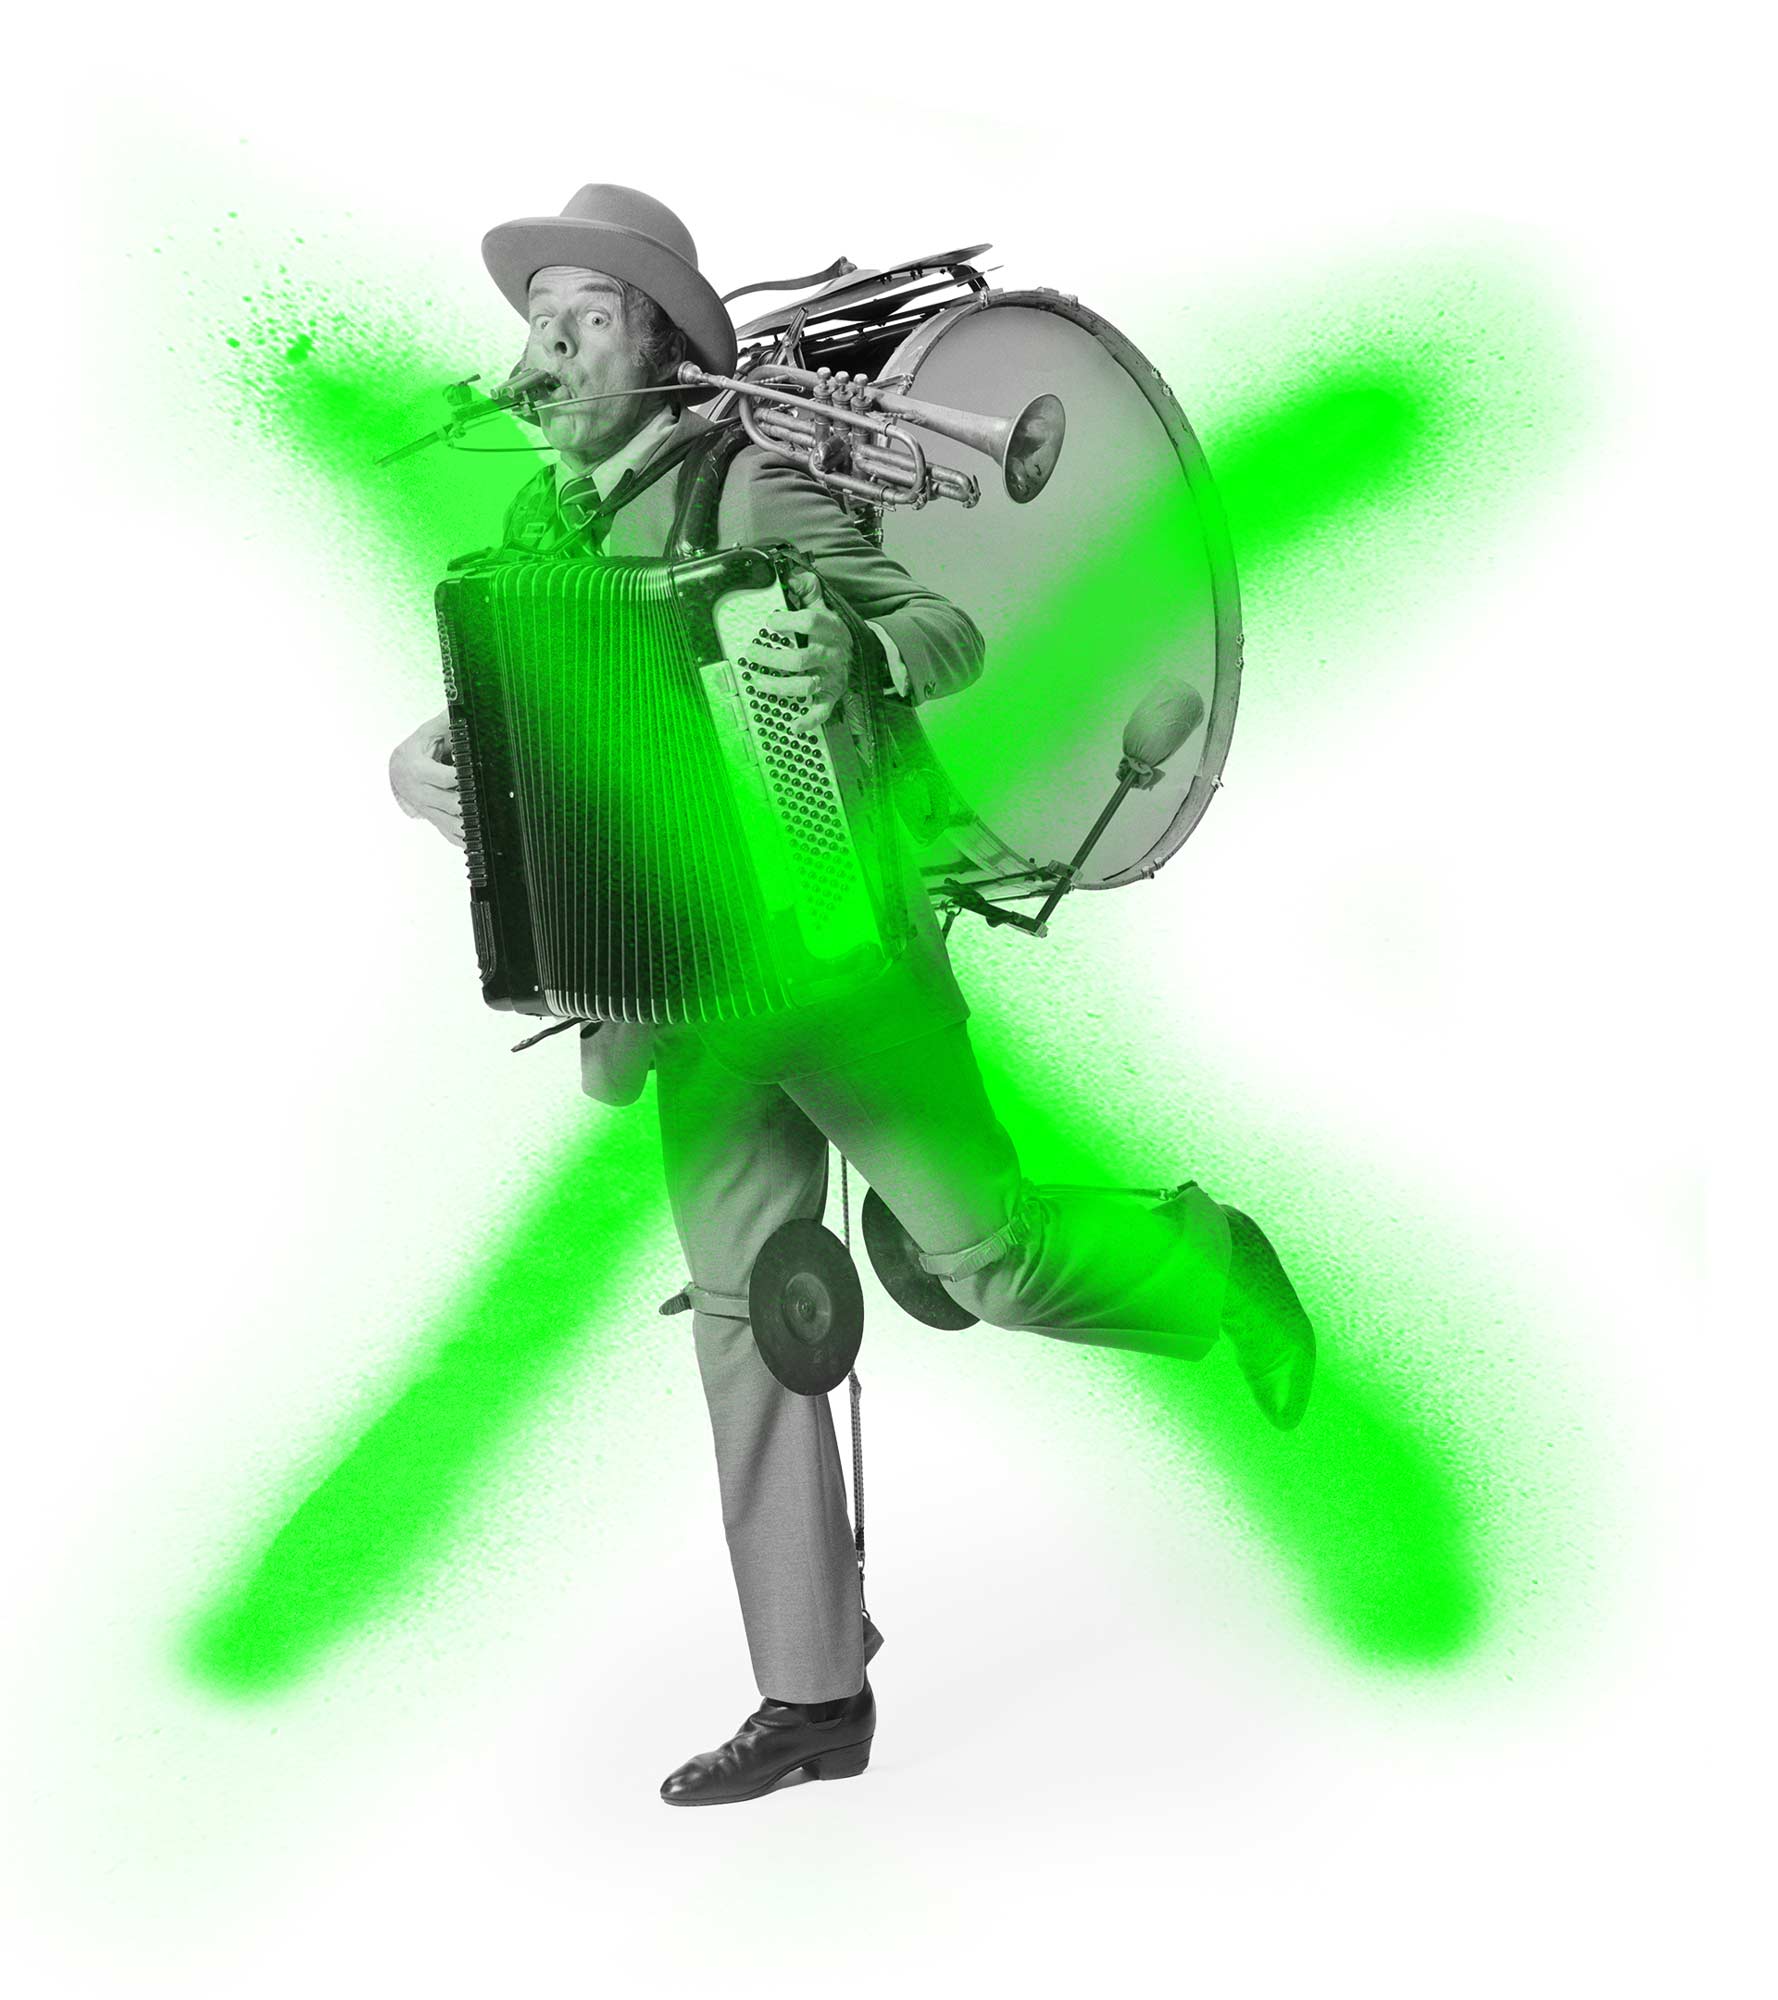 Eine Ein-Mann-Band, durchgestrichen mit grüner Sprühfarbe.